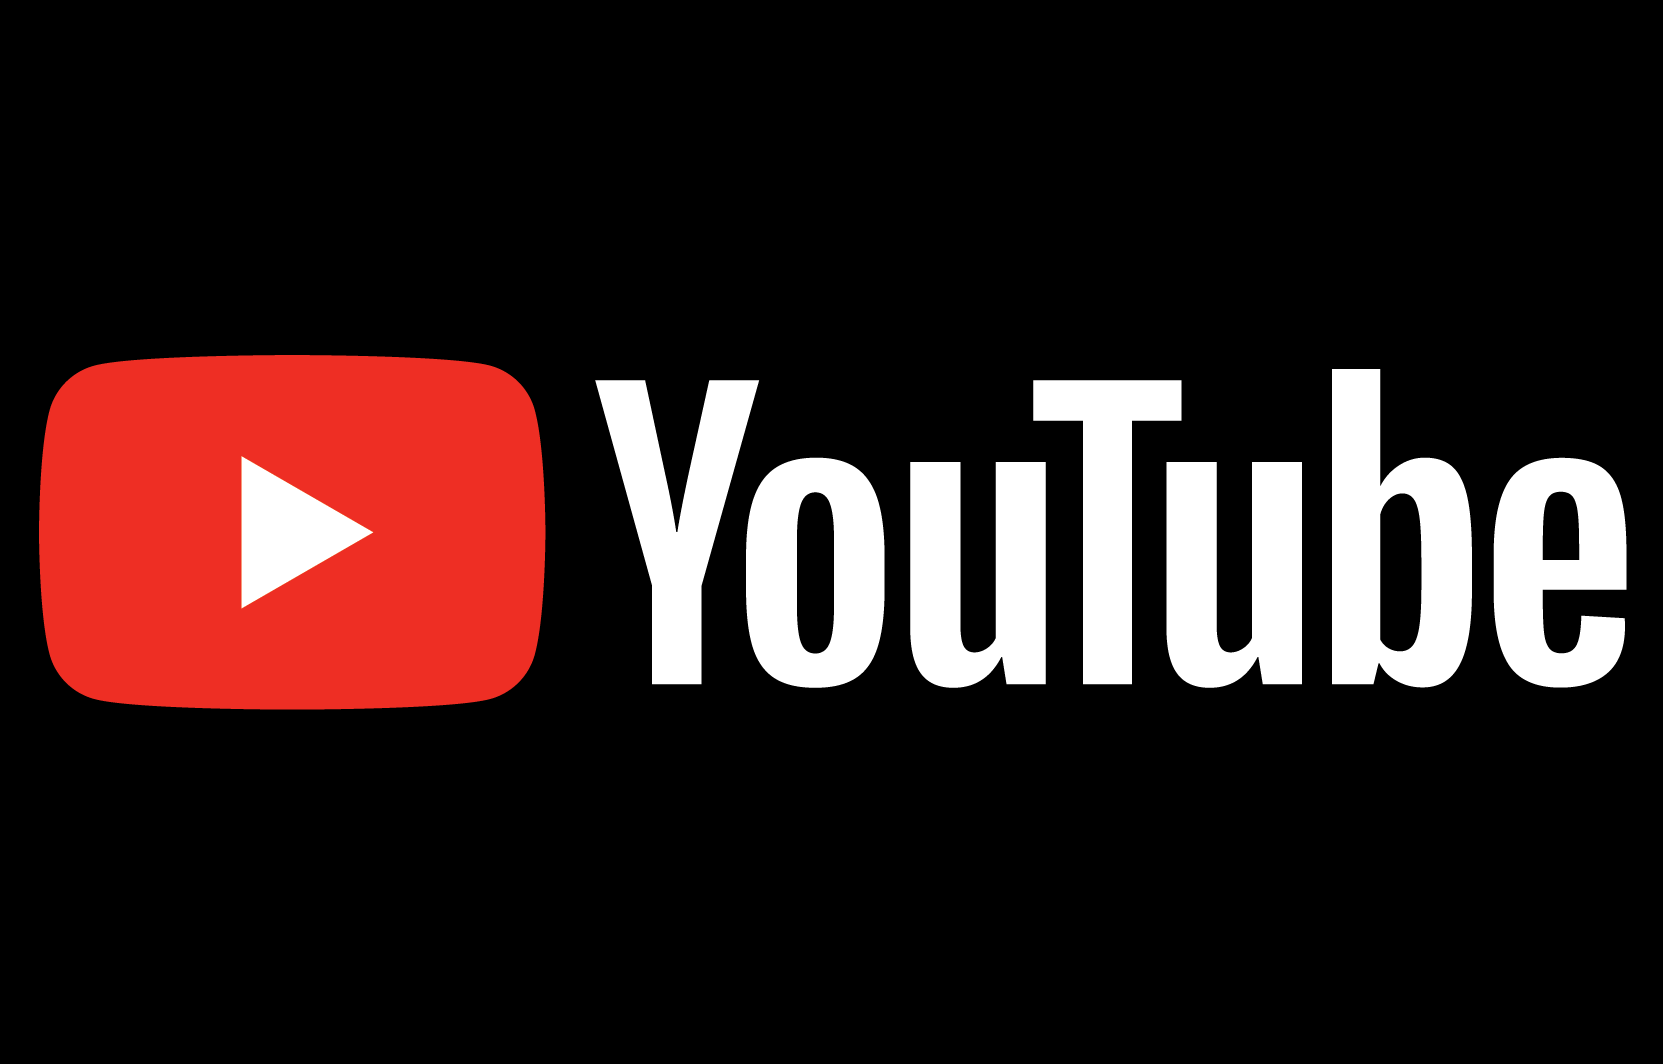 YouTube-logo-black-background